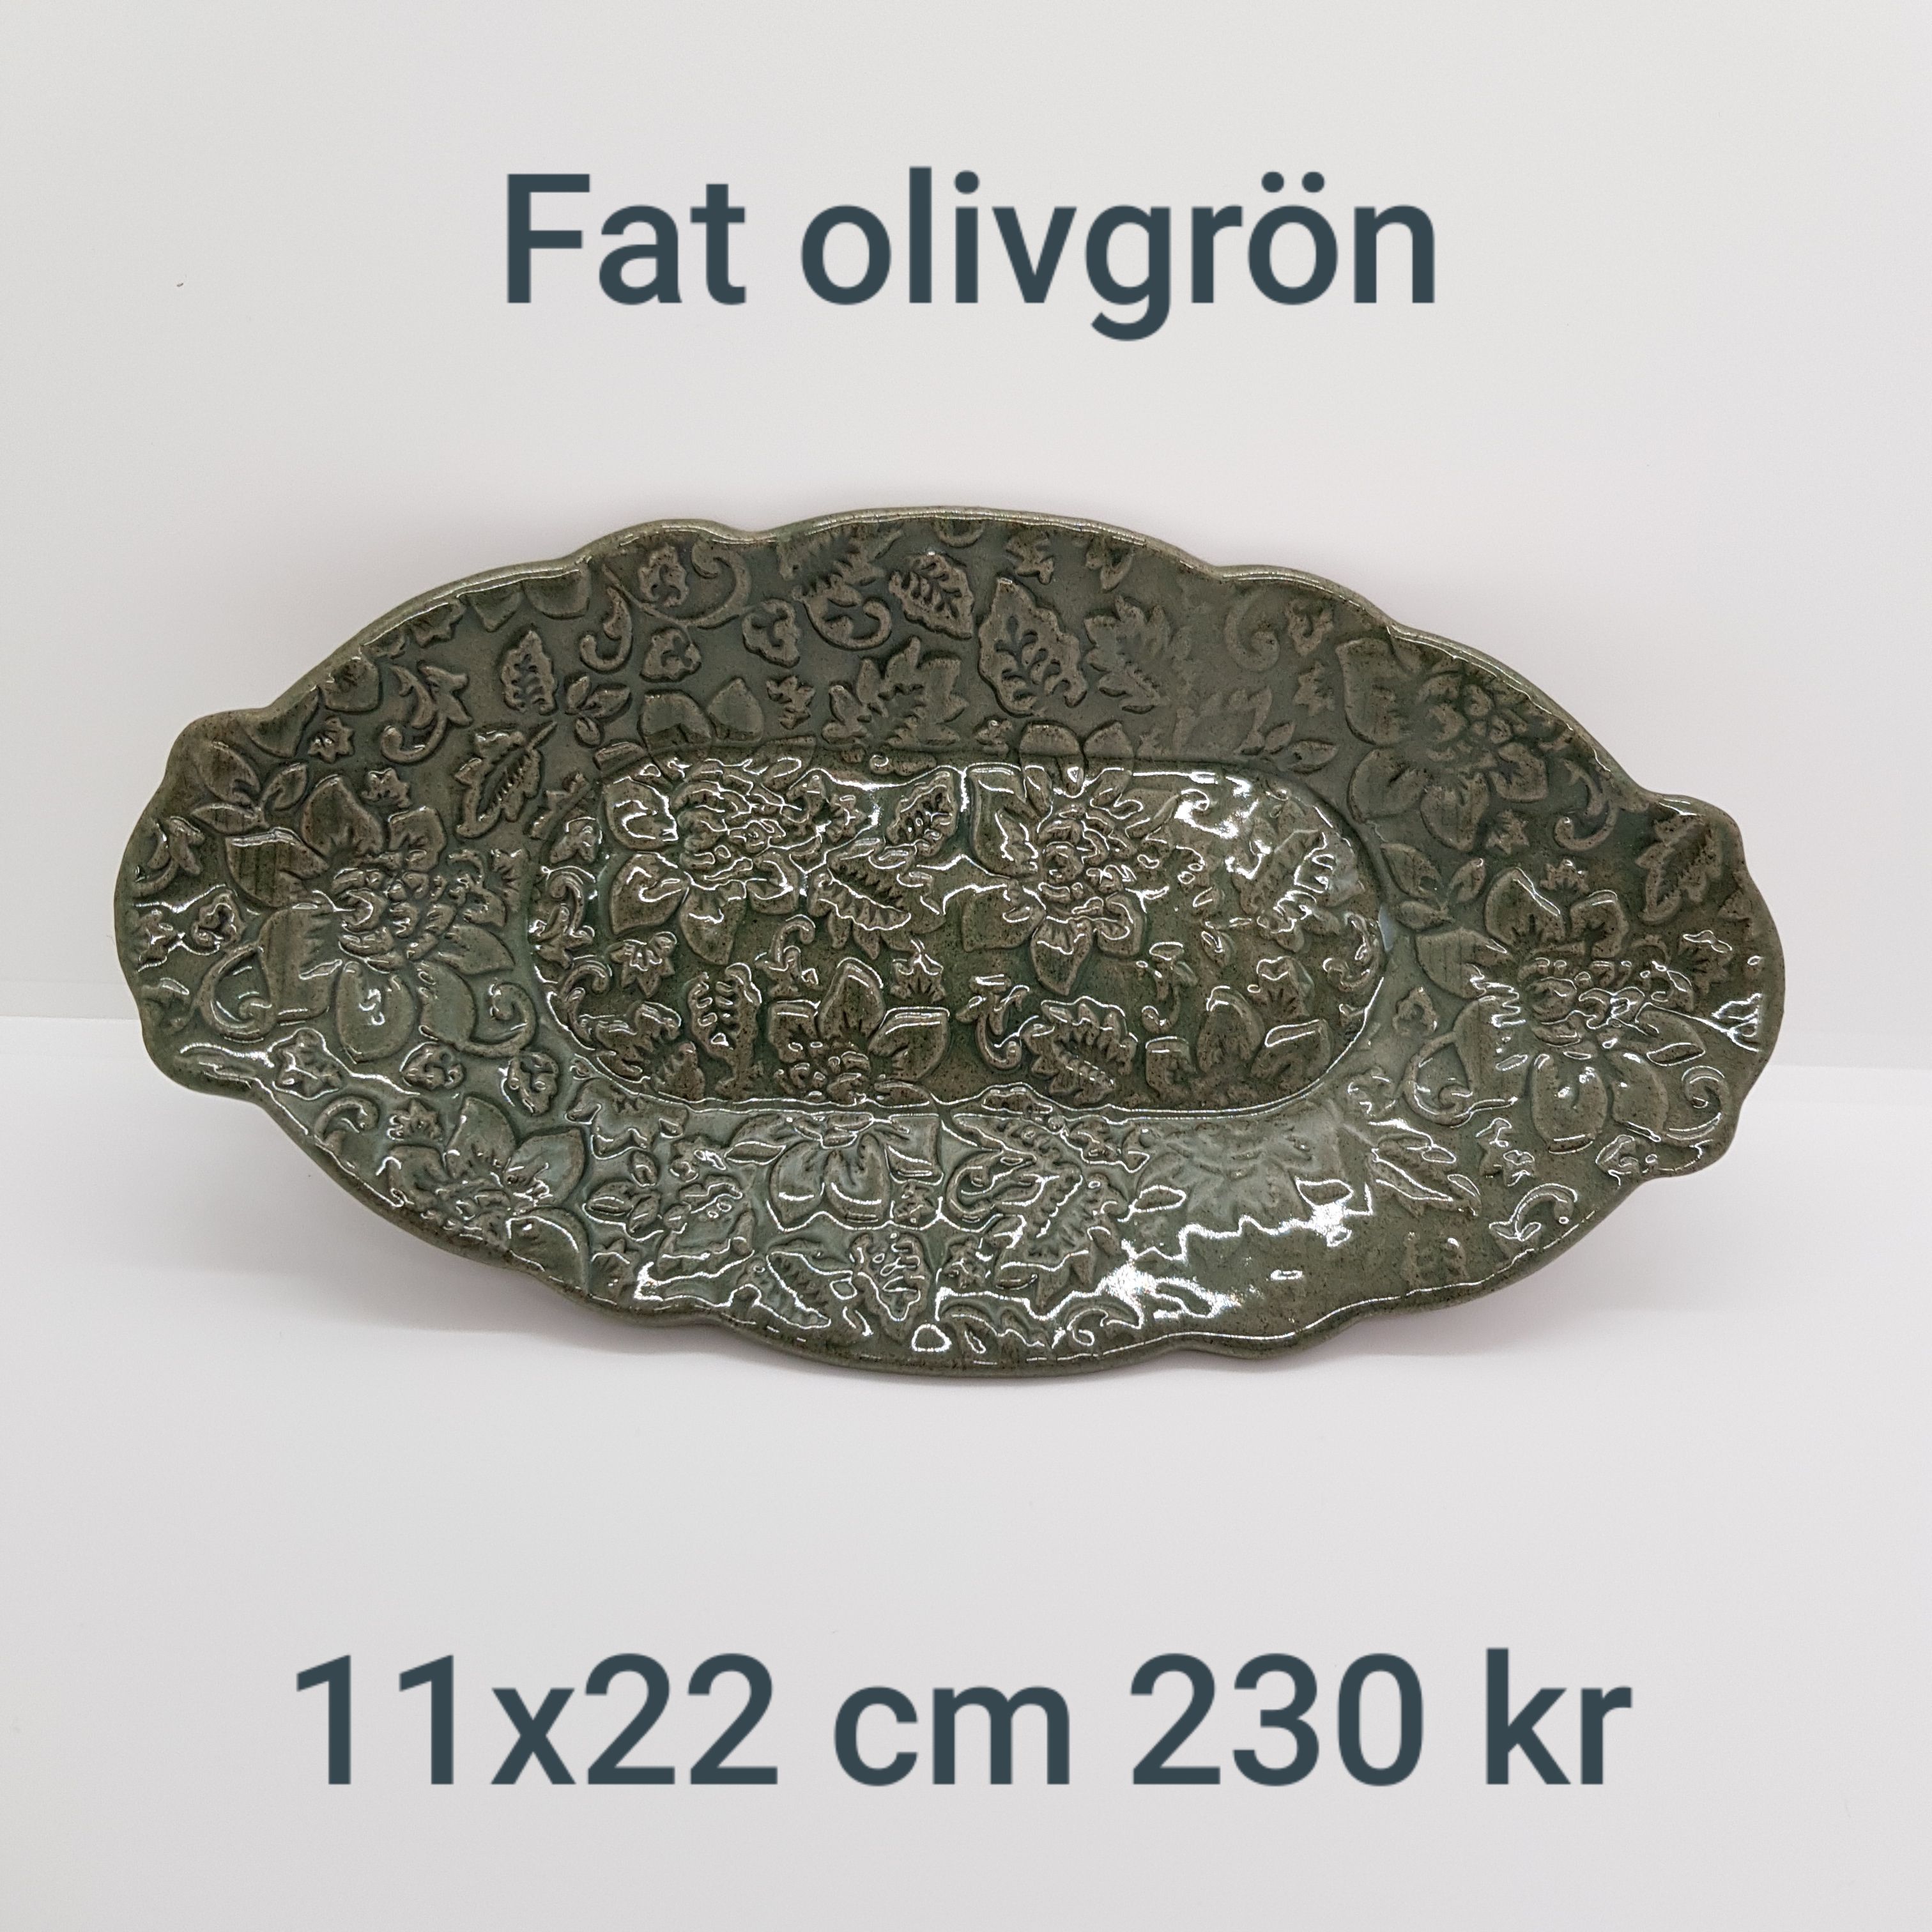 a fat olivgrön